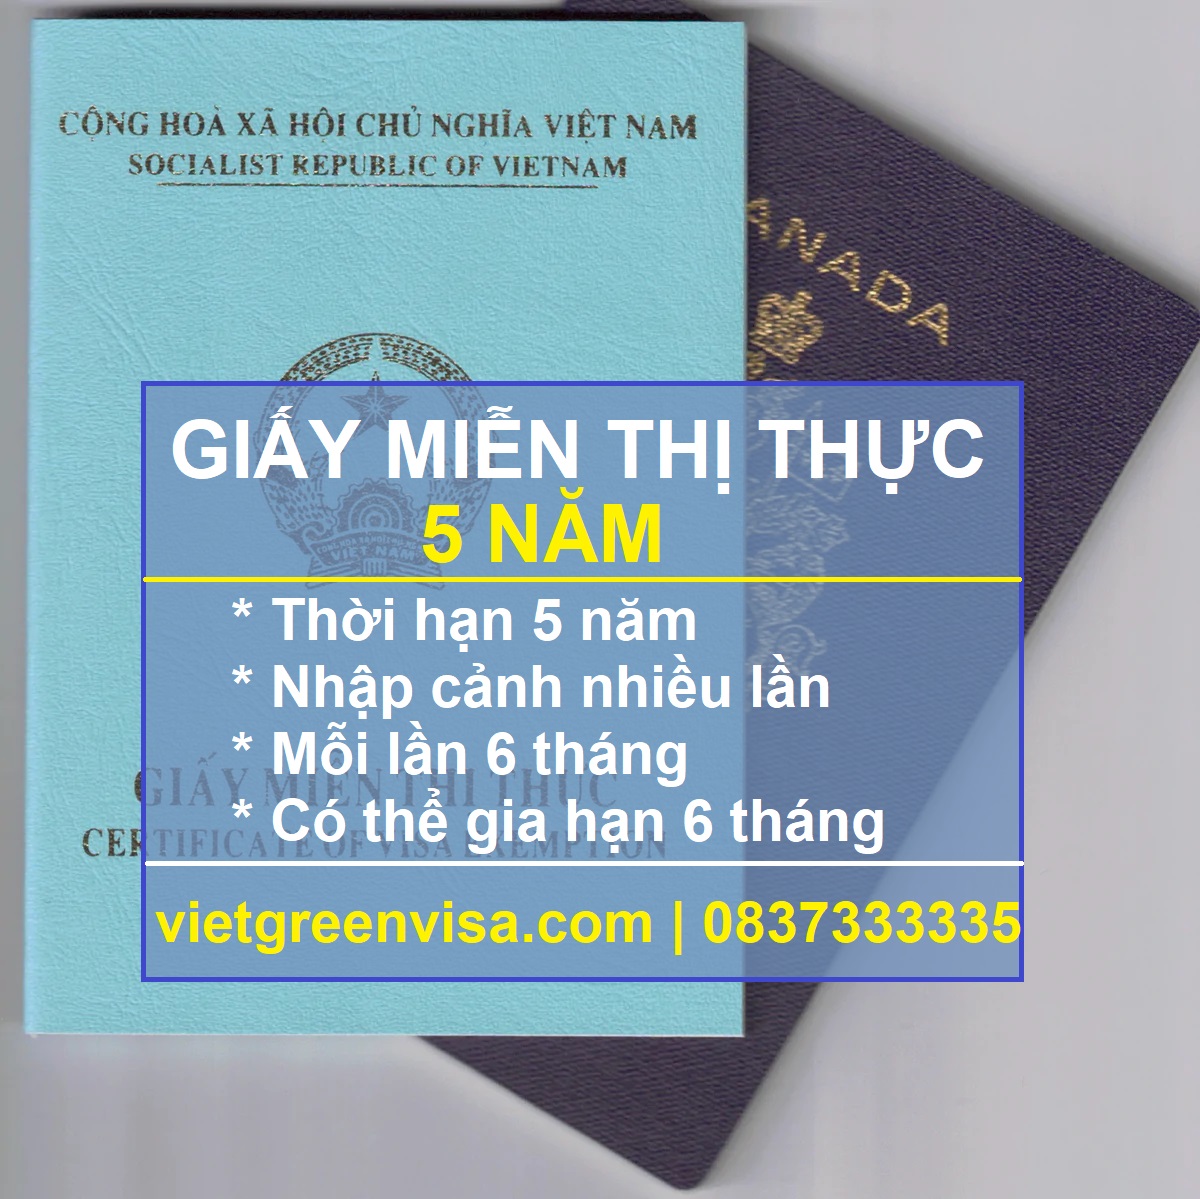 Giấy miễn thị thực, Giấy miễn thị thực 5 năm, Visa Việt Nam 5 năm, Dịch vụ xin giấy miễn thị thực 